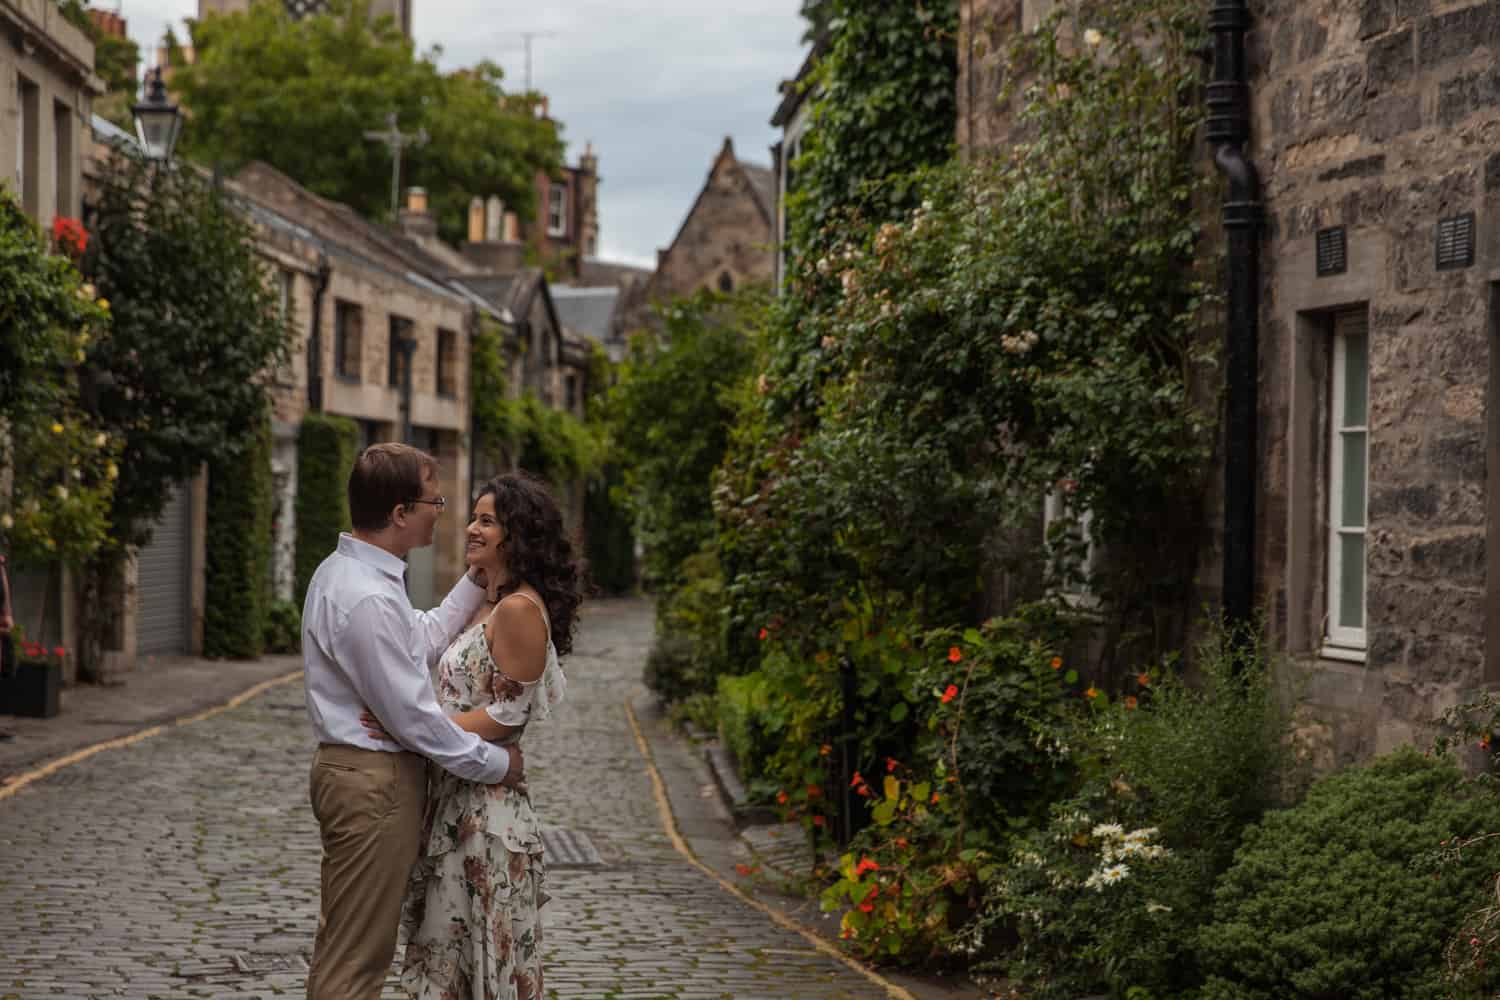 Top romantic places to propose in Edinburgh. 70